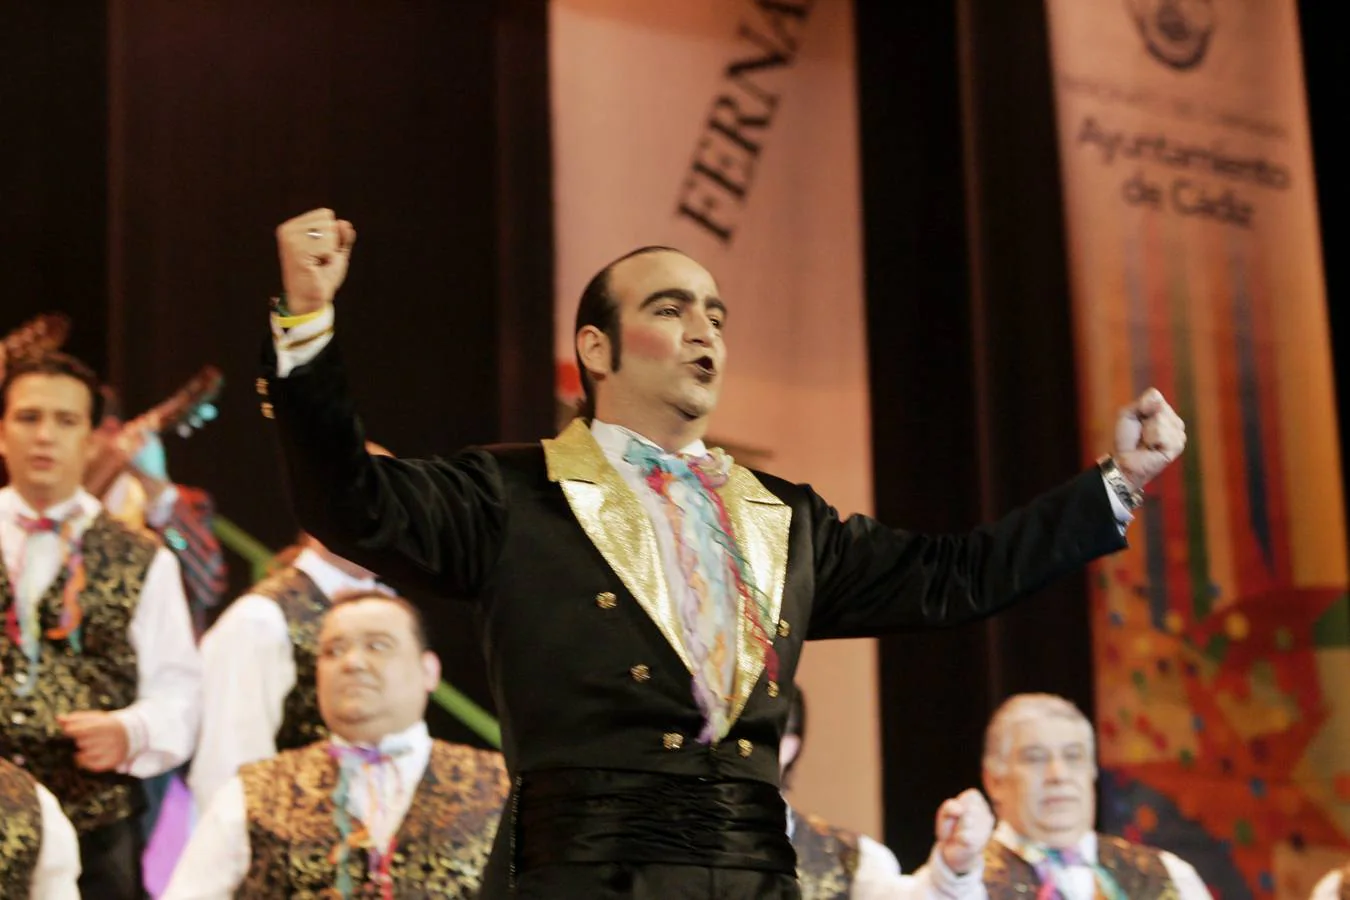 Manolo Camacho alternaba su emisión carnavalesca en Punto Radio con su papel de presentador de 'El mejor coro del mundo', de Julio Pardo y Antonio Rivas